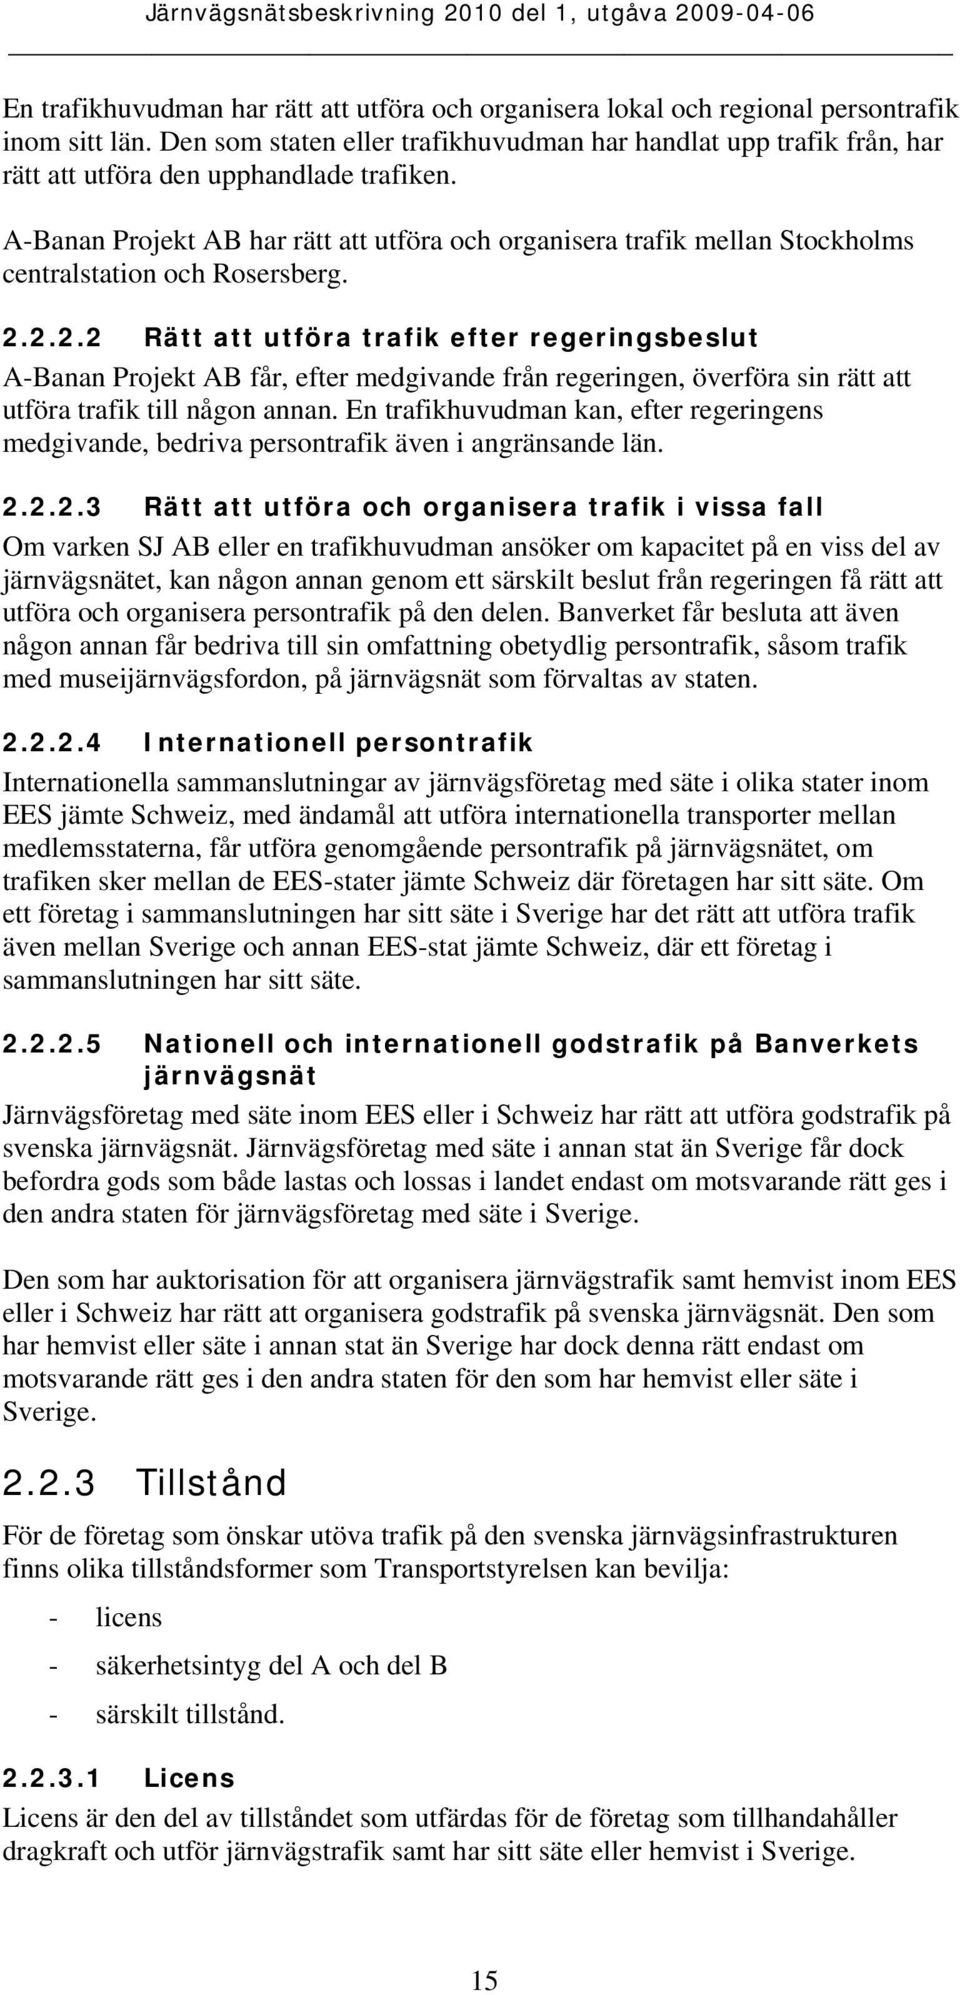 A-Banan Projekt AB har rätt att utföra och organisera trafik mellan Stockholms centralstation och Rosersberg. 2.